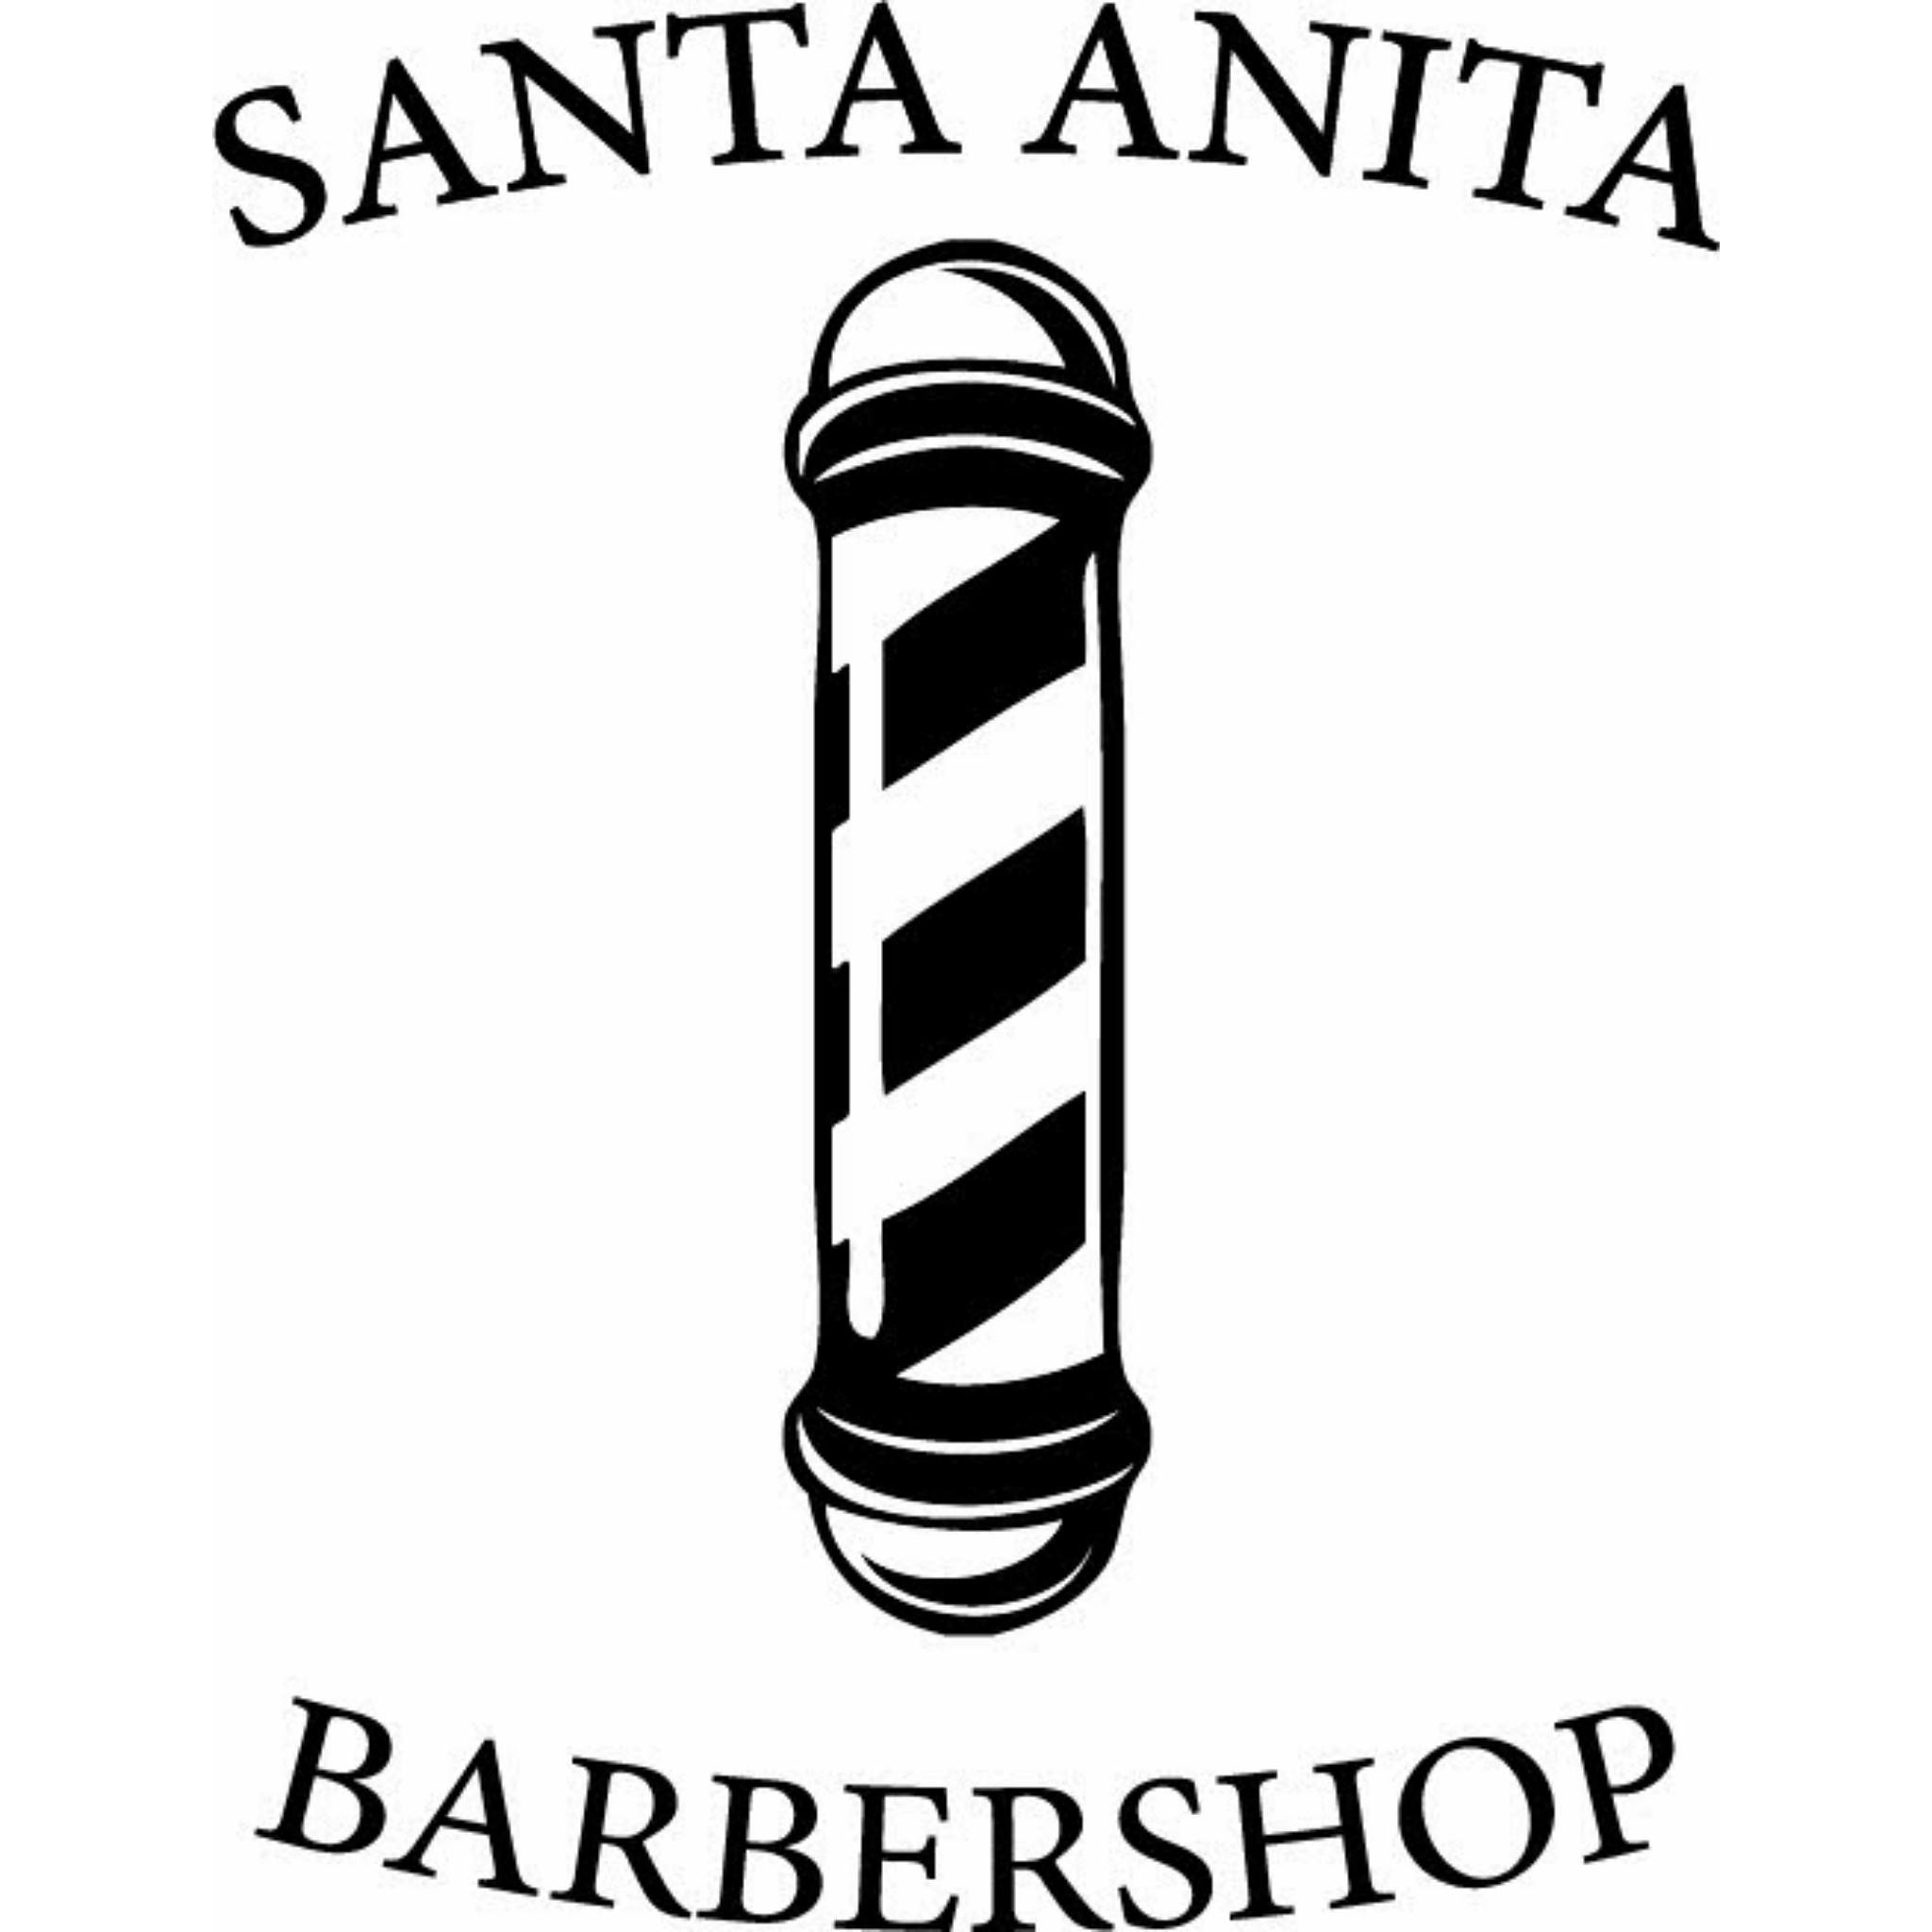 Santa Anita Barbershop